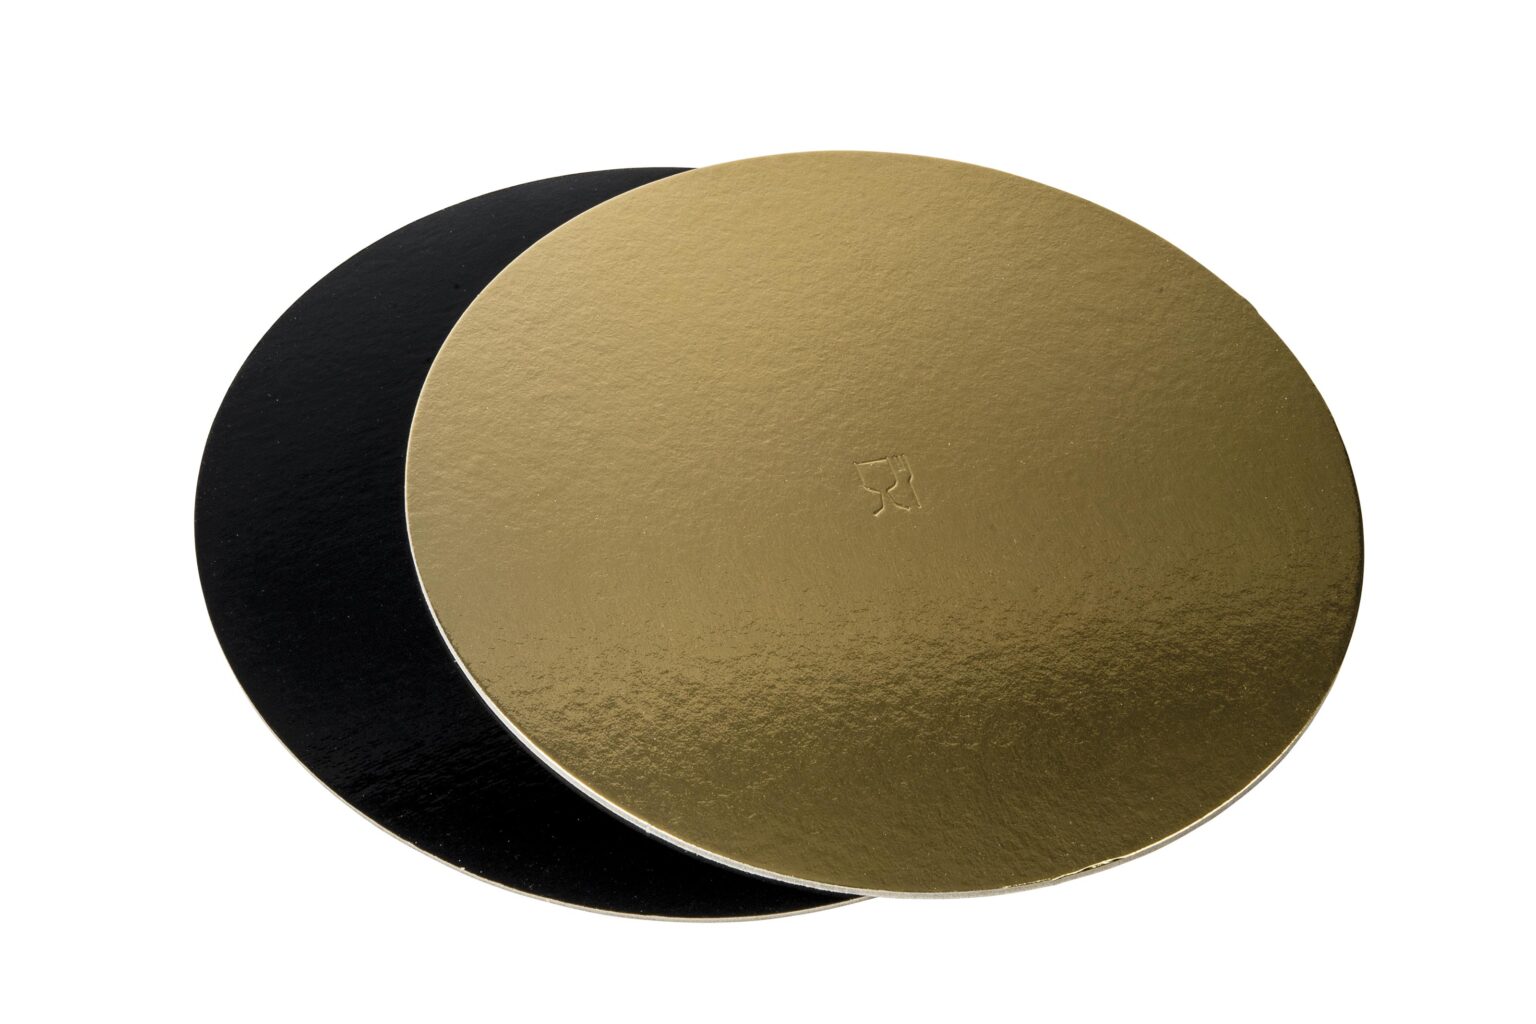 Discuri groase auriu/negru - Discuri groase auriu/negru 2400 gr OE44cm -10 buc/set